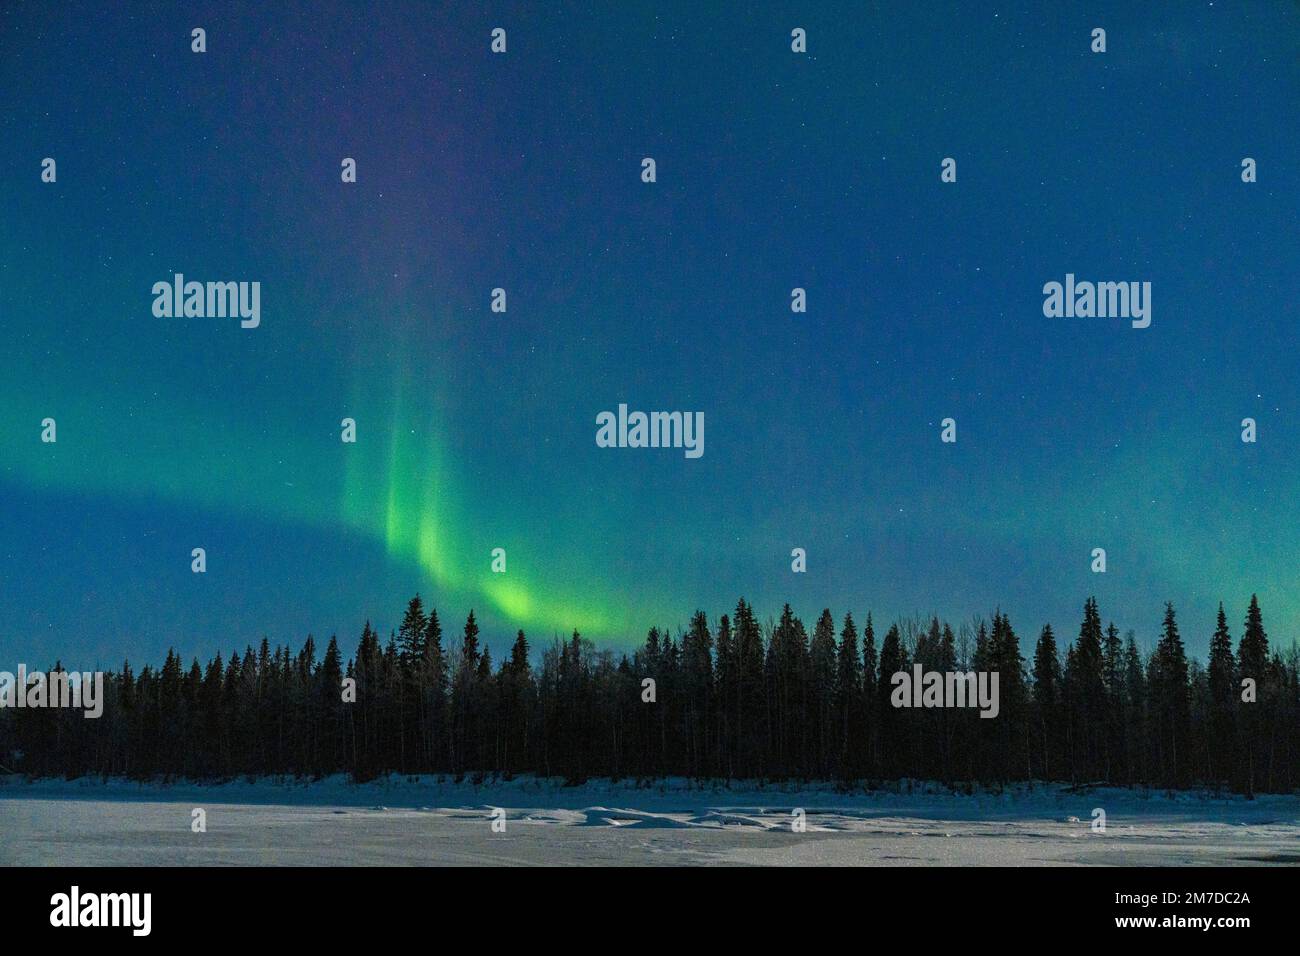 Foresta innevata illuminata dalla luce verde dell'aurora borealis, Levi, Kittila, Lapponia, Finlandia Foto Stock